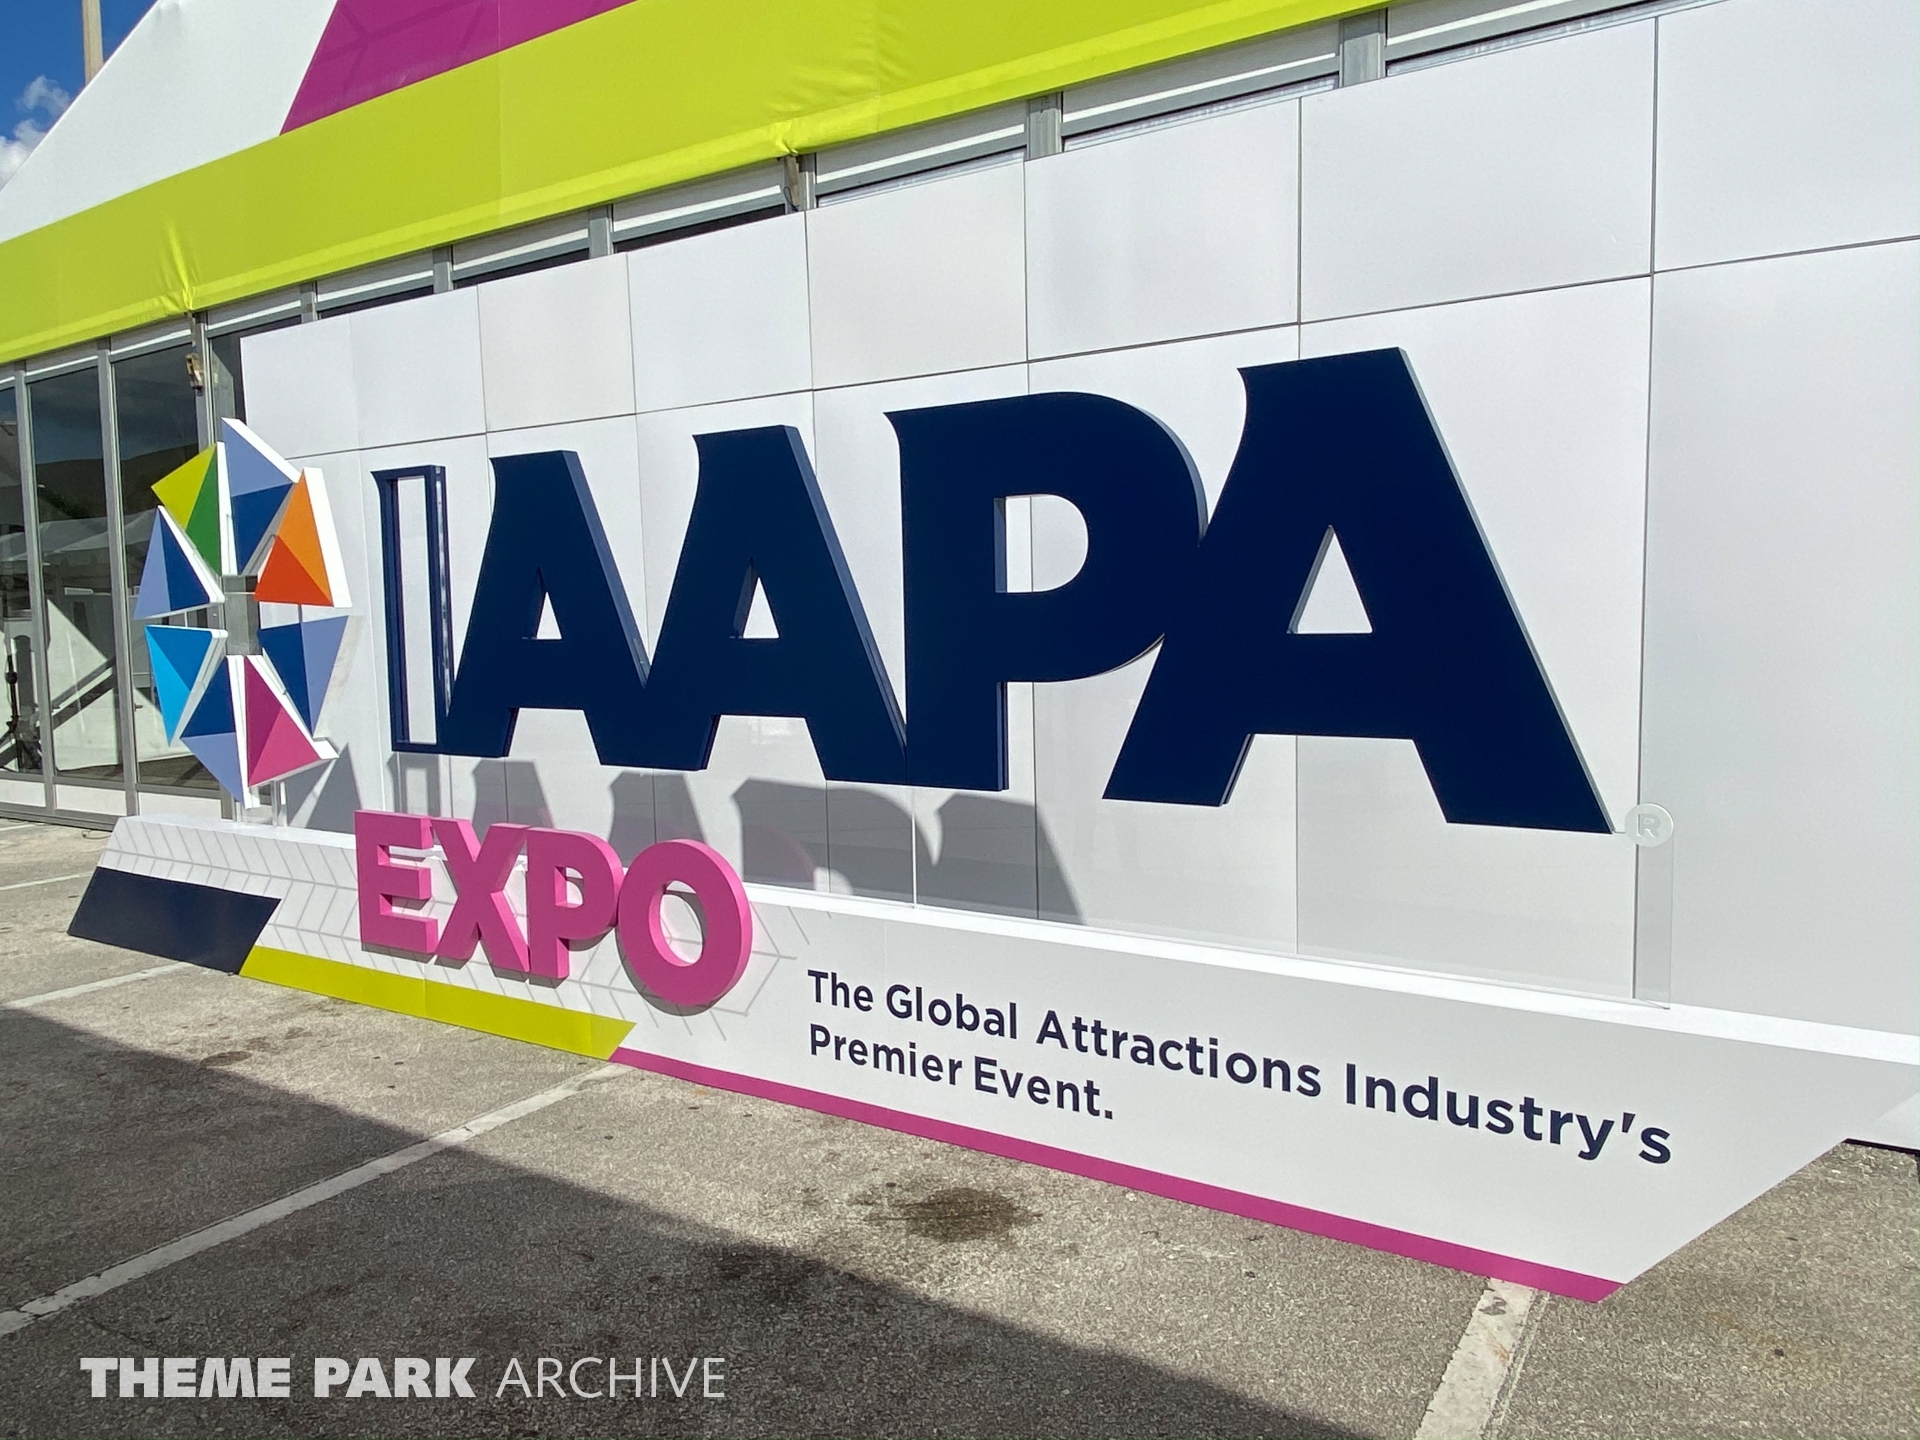  at IAAPA Expo